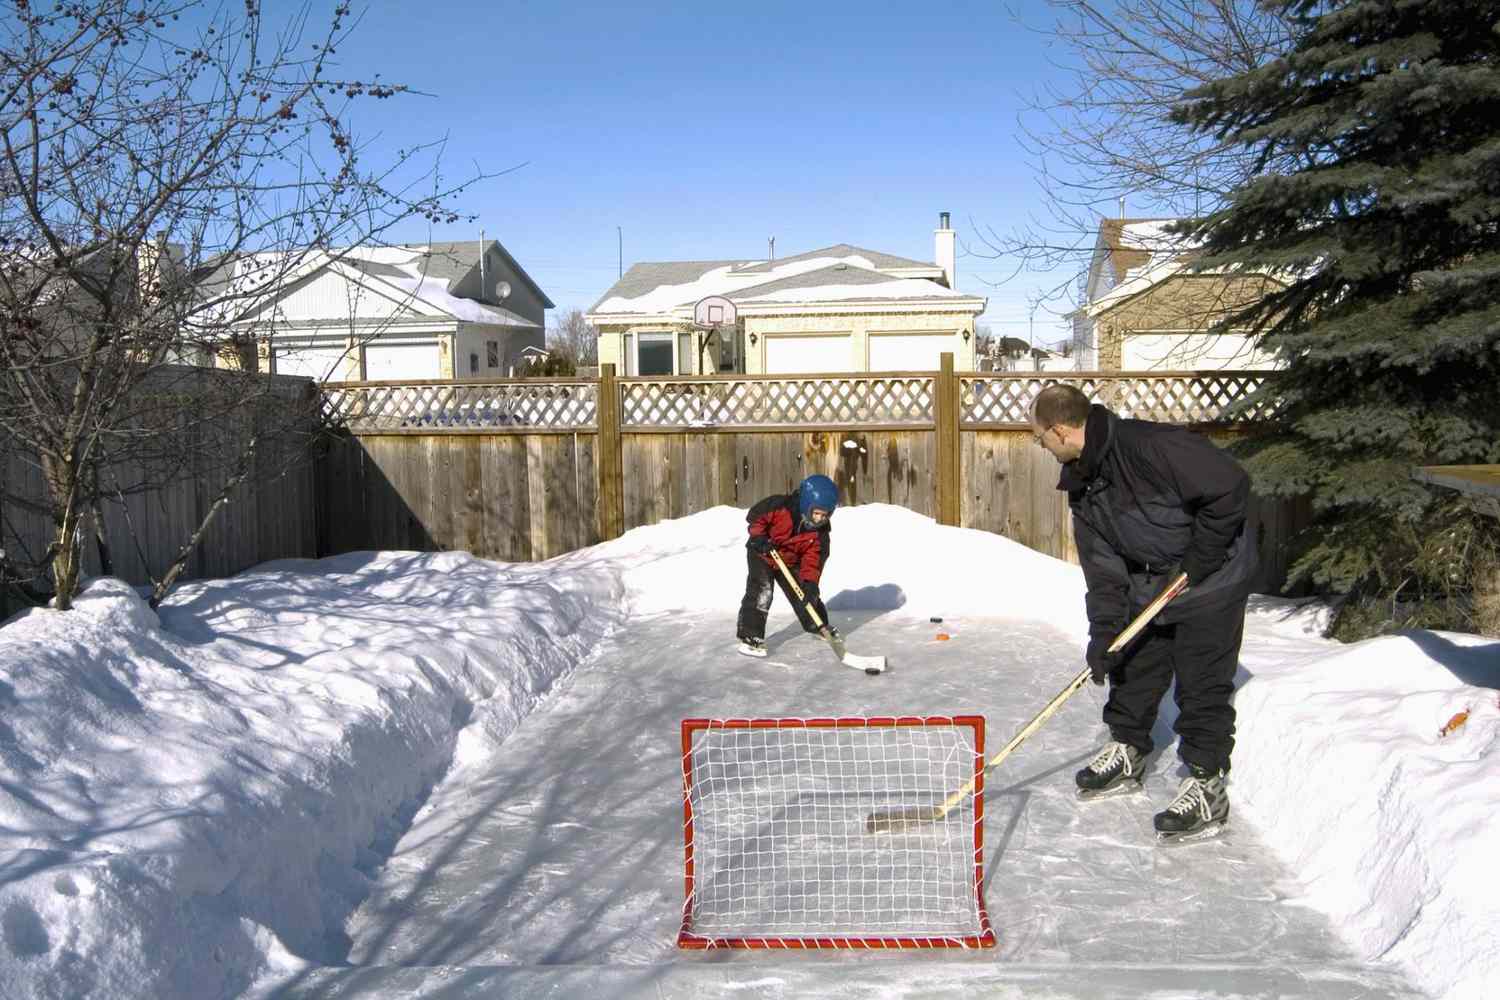 Pai e filho jogando hóquei no quintal, Winnipeg, Manitoba